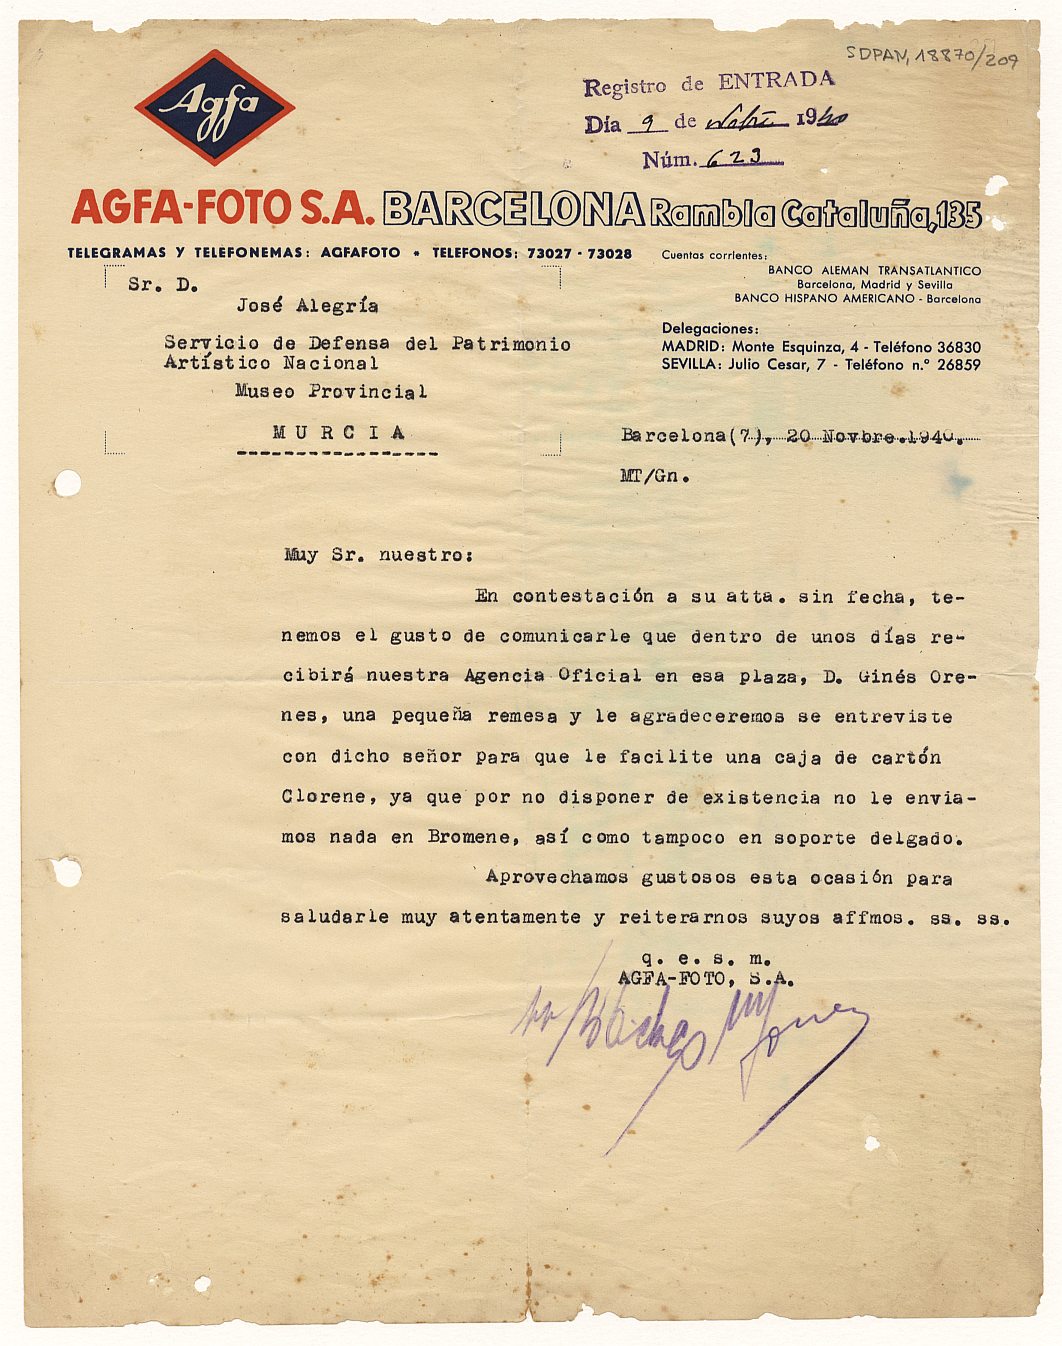 Carta enviada por la empresa Agfa-Foto Barcelona en la que comunican al Servicio de Defensa del Patrimonio Artístico Nacional de Murcia que se ha enviado una remasa de material fotográfico al establecimiento de Ginés Orenes.